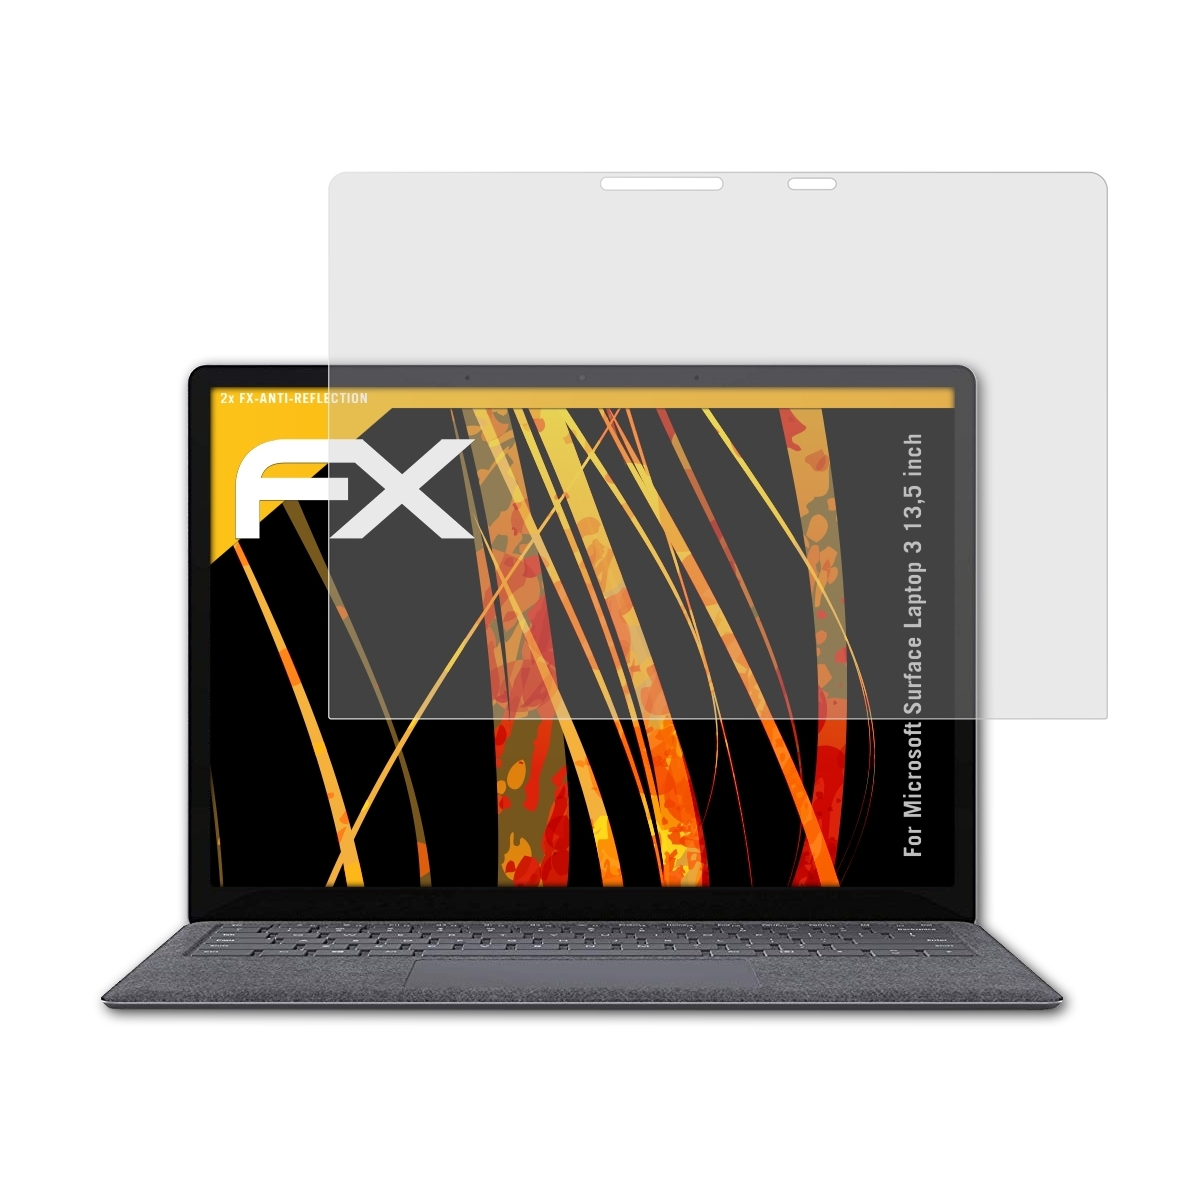 ATFOLIX 2x FX-Antireflex Displayschutz(für Microsoft inch)) (13,5 Laptop 3 Surface